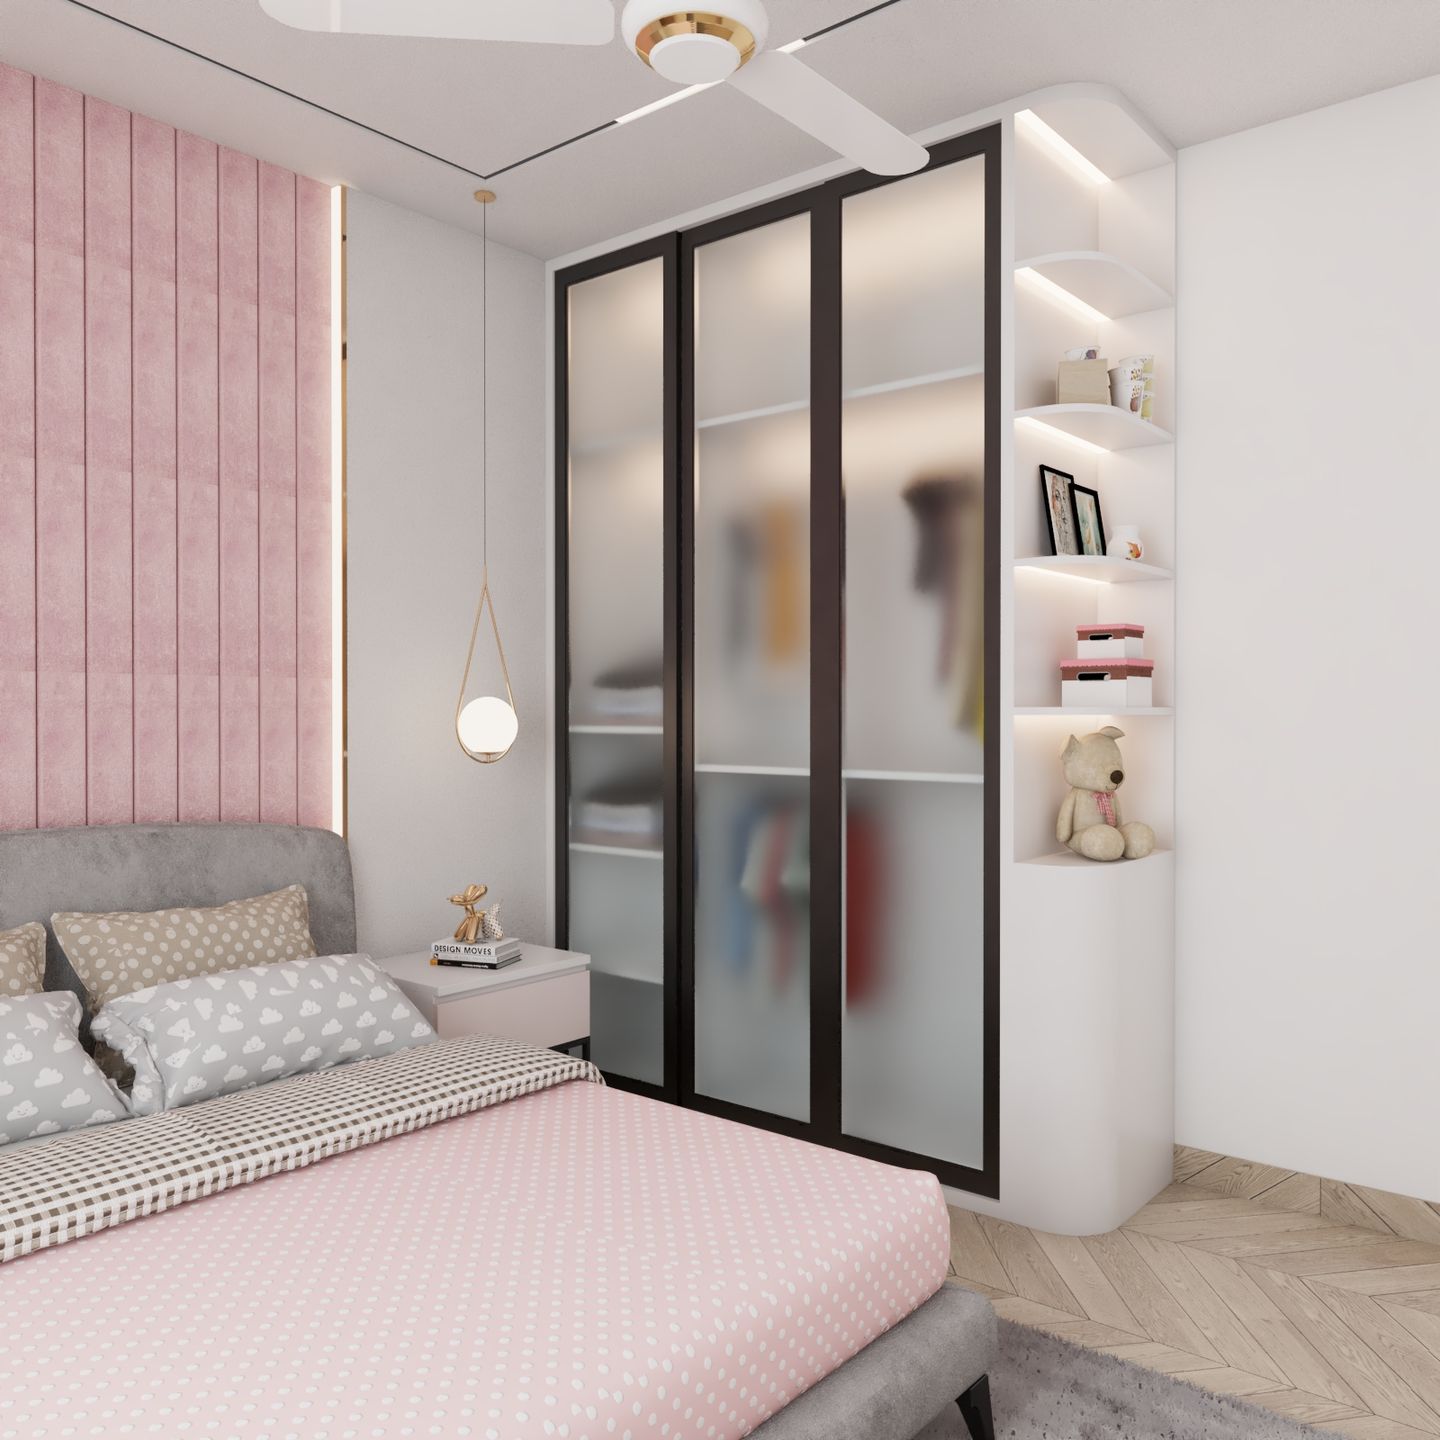 3-Door Swing Wardrobe Design With Open Glass Cabinets - Livspace